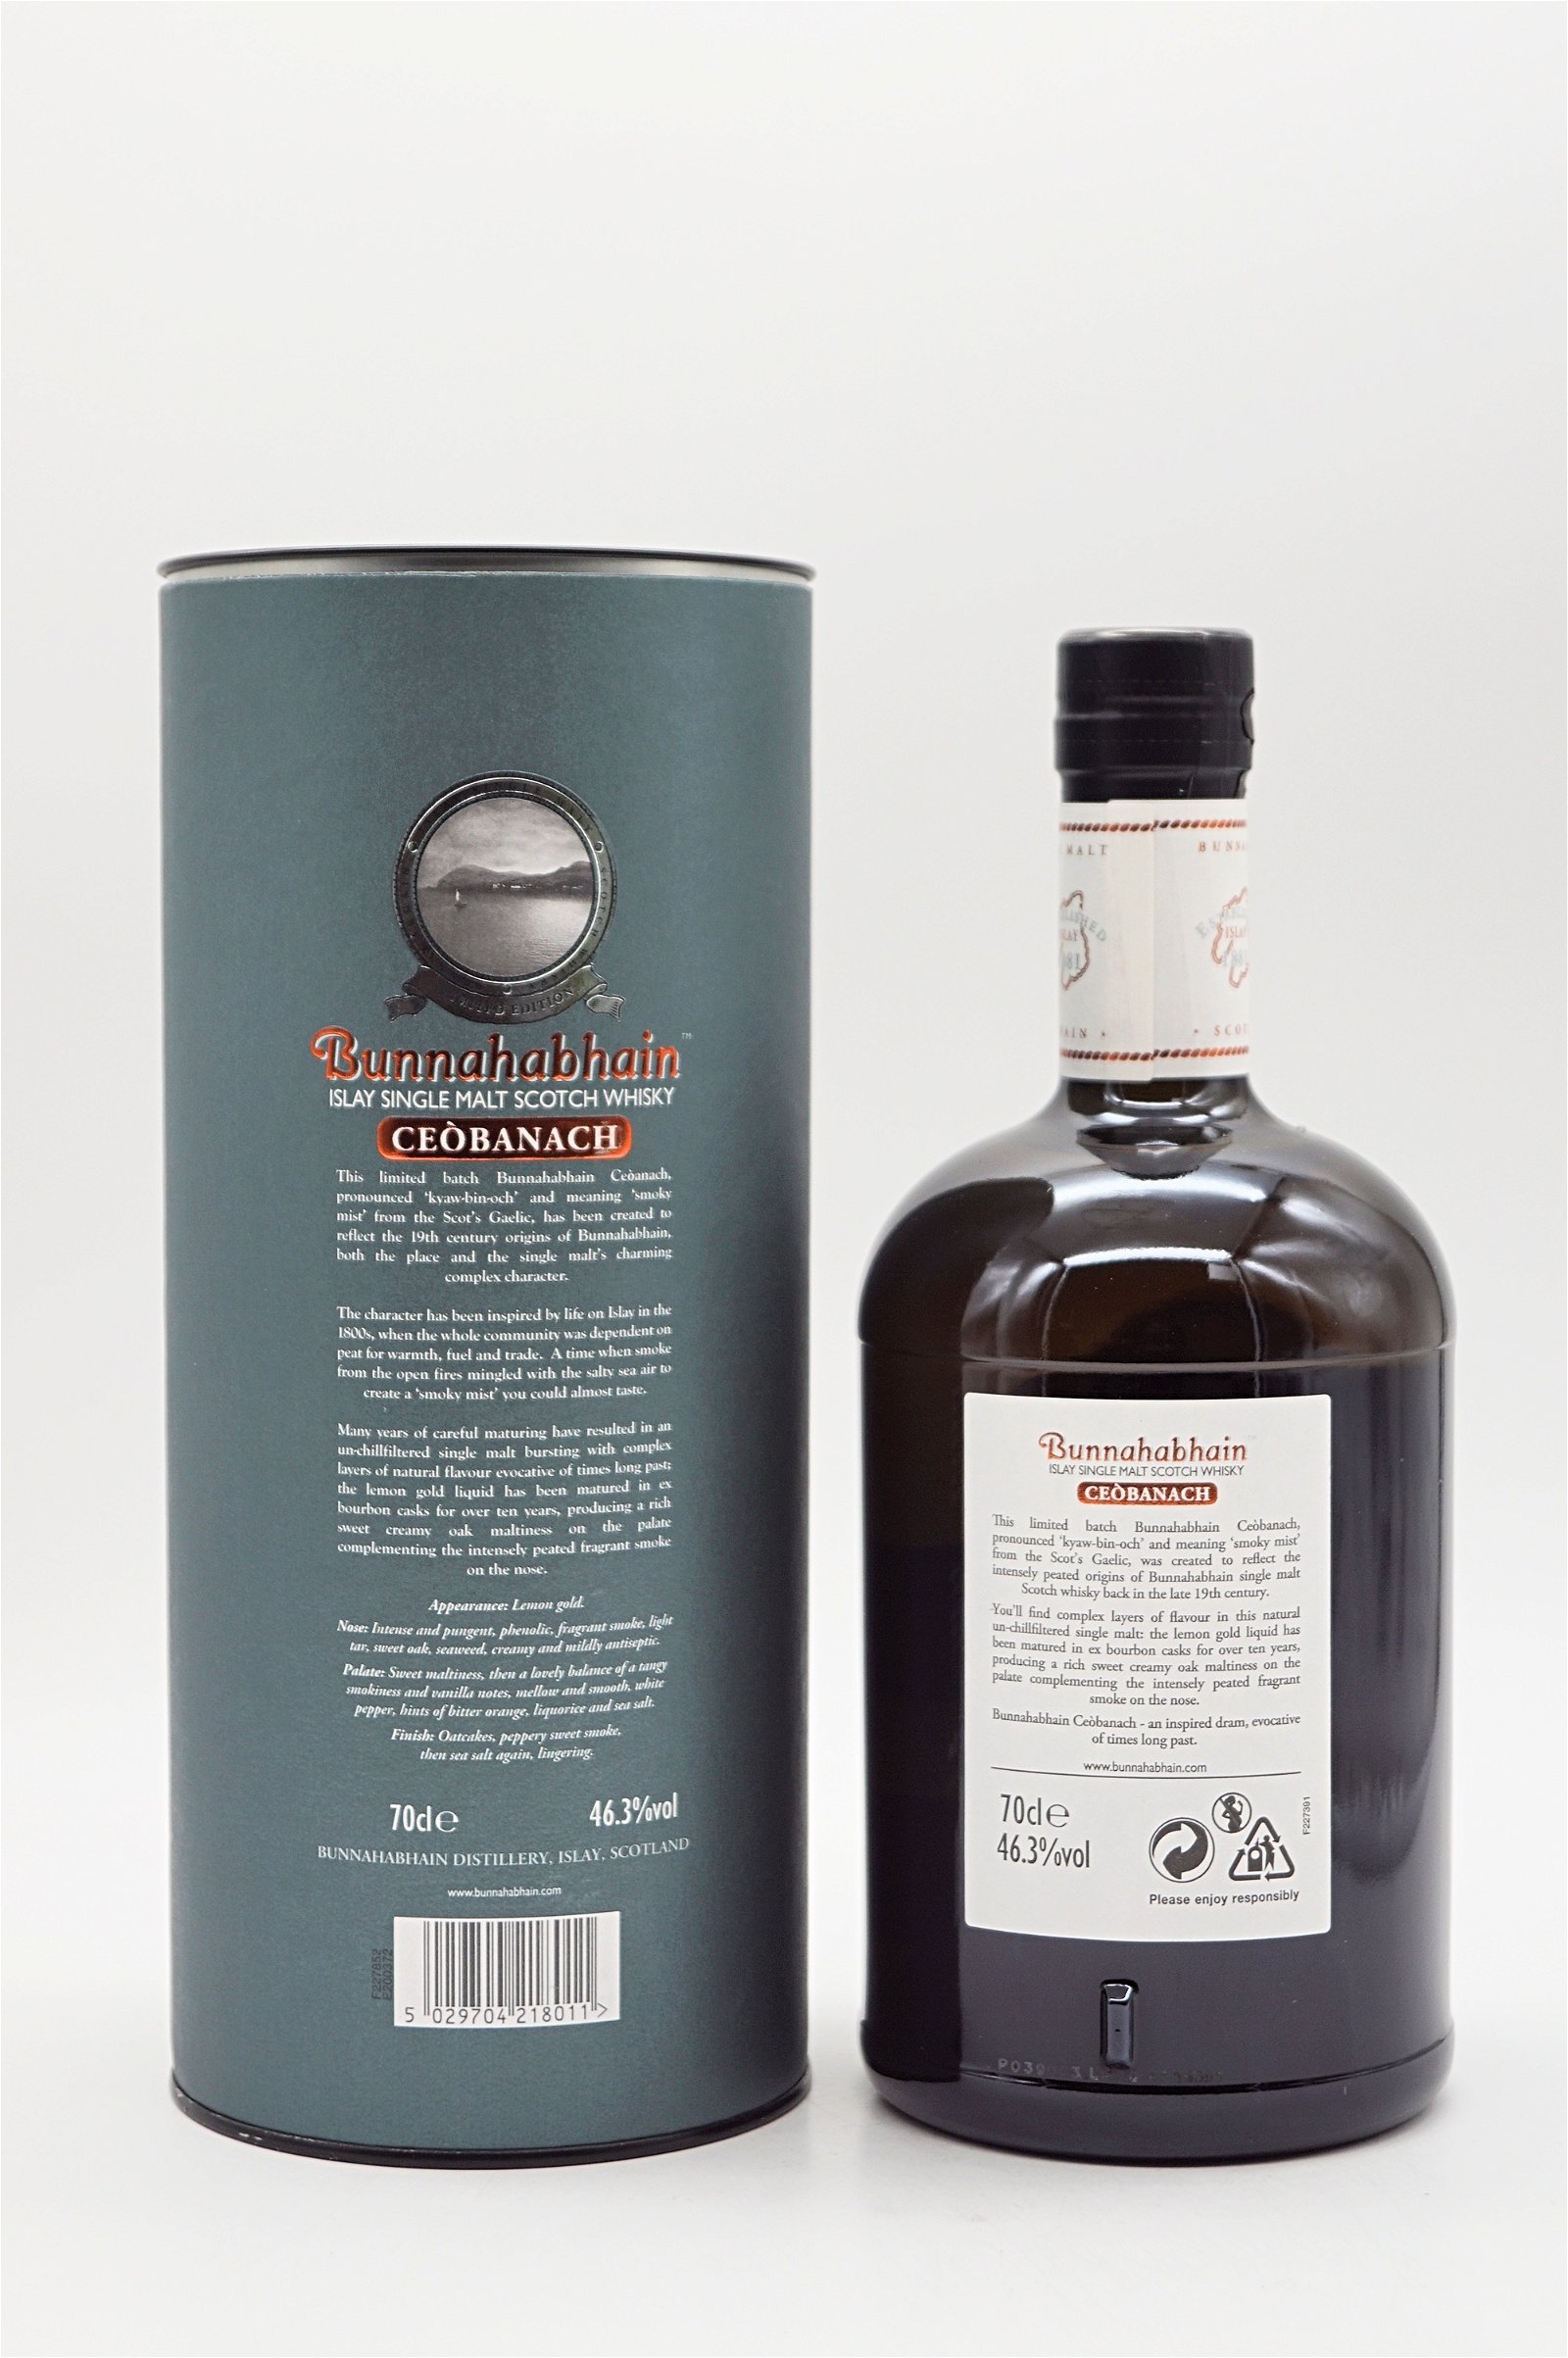 Bunnahabhain Ceobanach Intensely Peated Single Malt Scotch Whisky